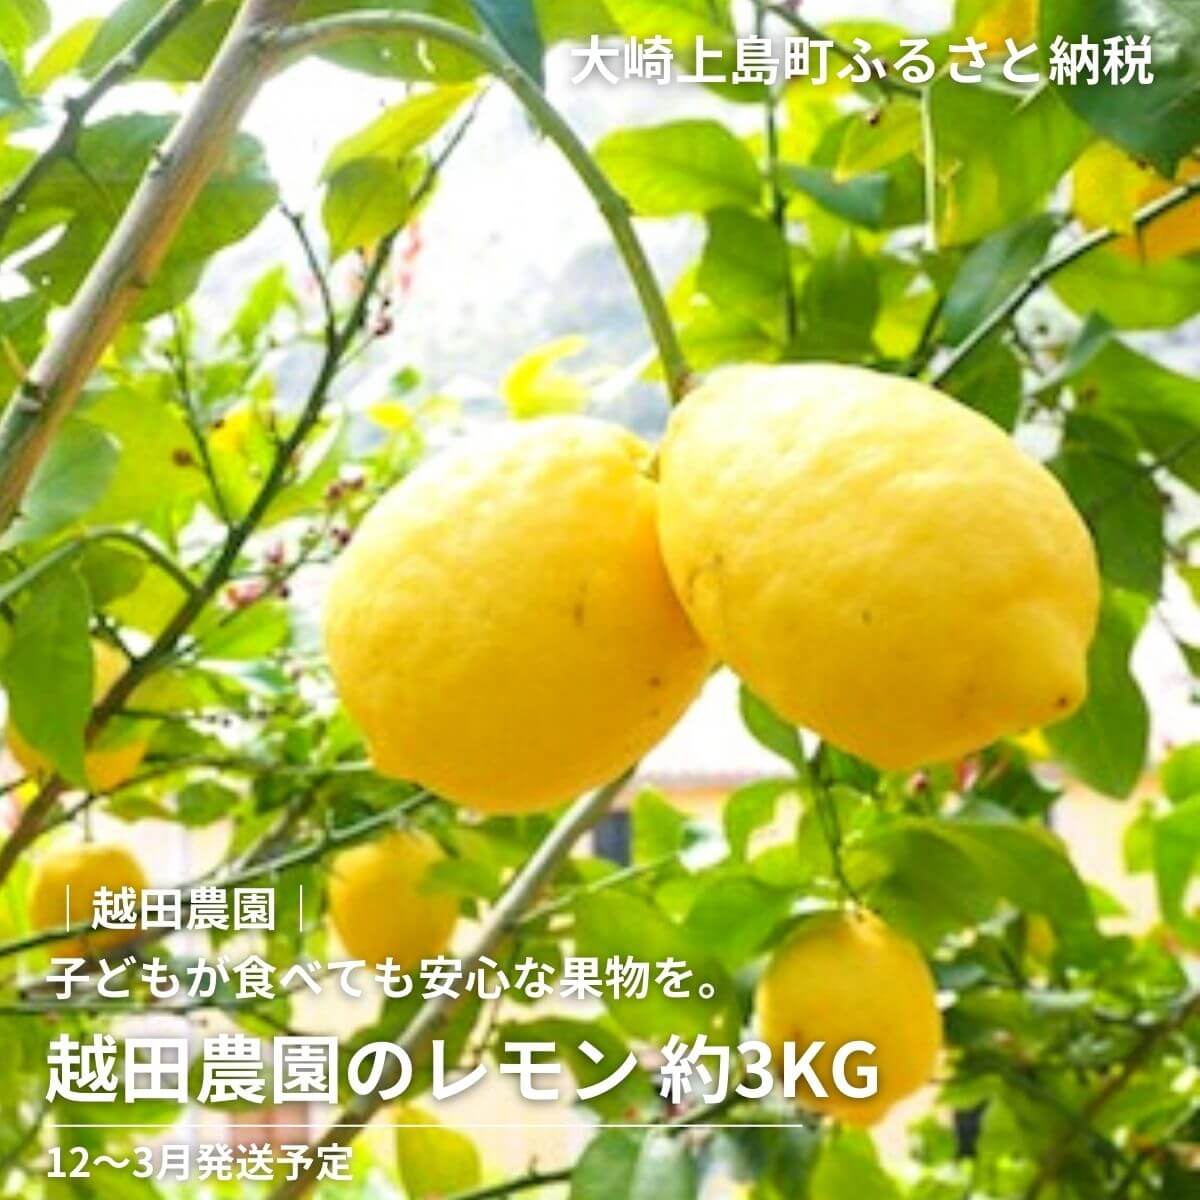 越田農園 レモン 約3kg 広島県 大崎上島町 